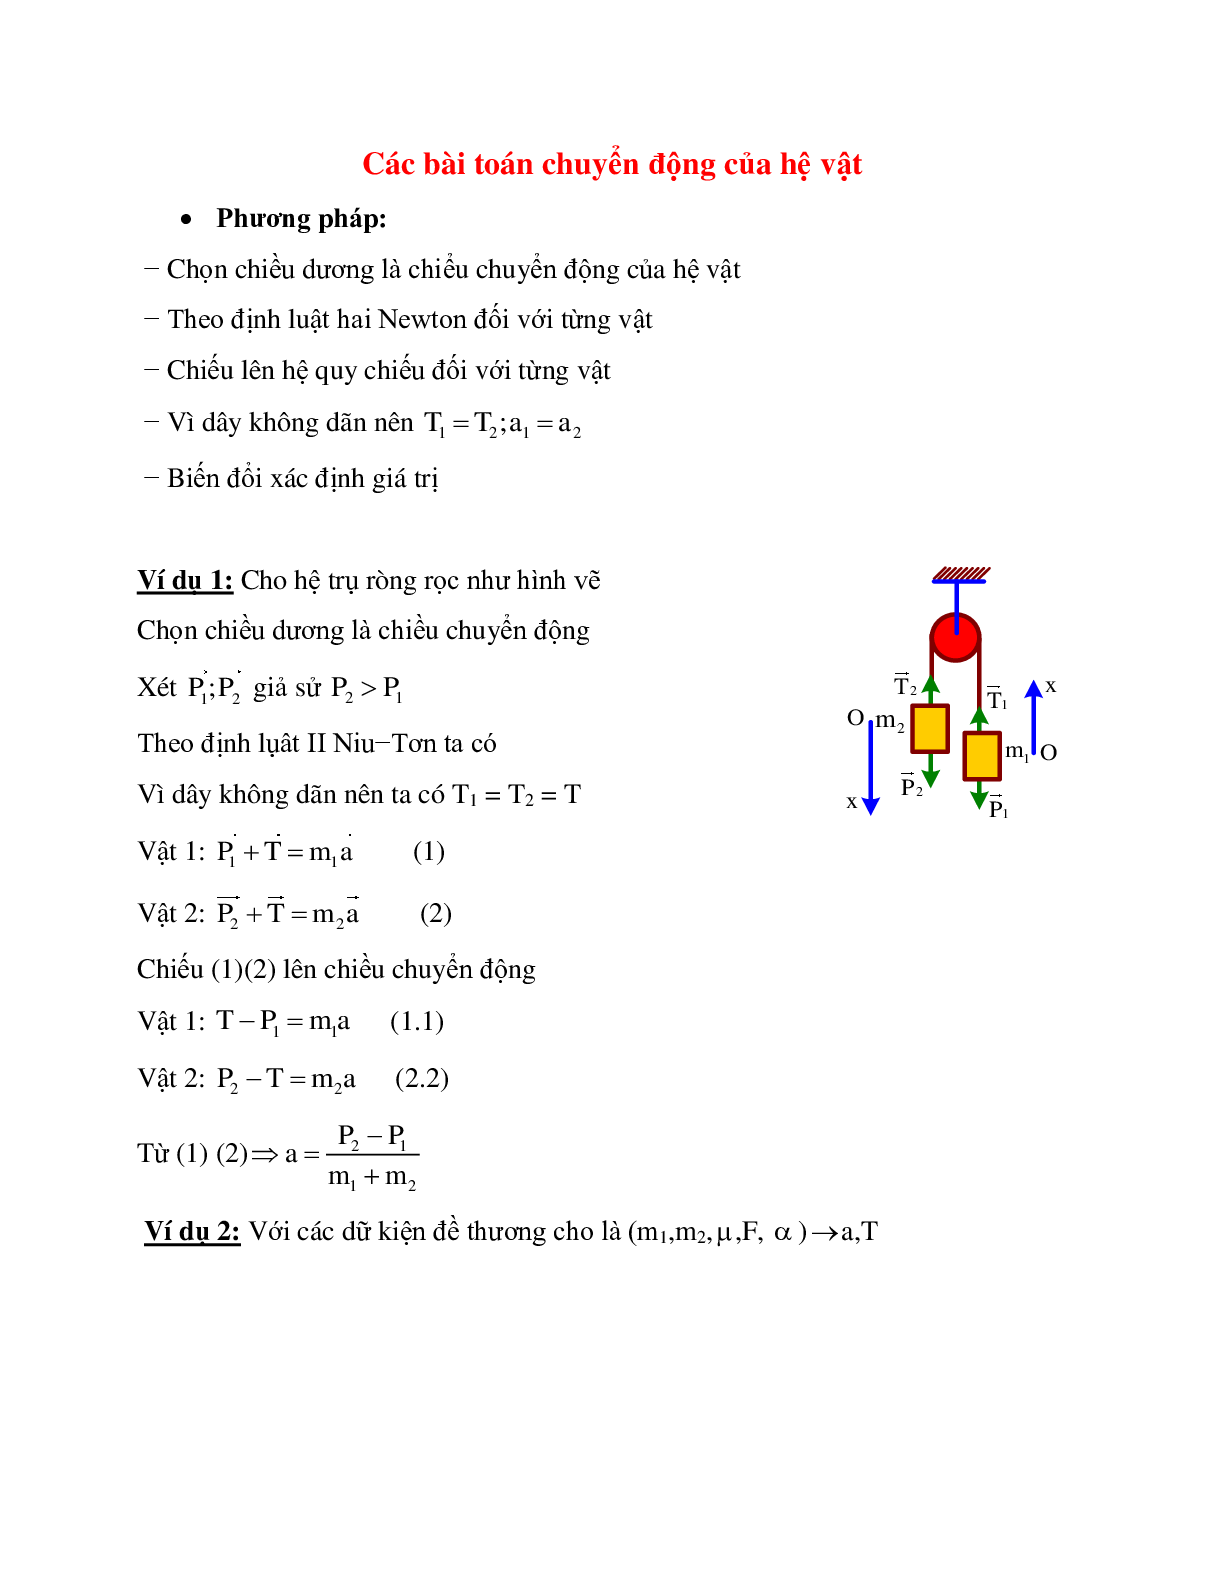 Phương pháp giải và bài tập về Các bài toán chuyển động của hệ vật chọn lọc (trang 1)